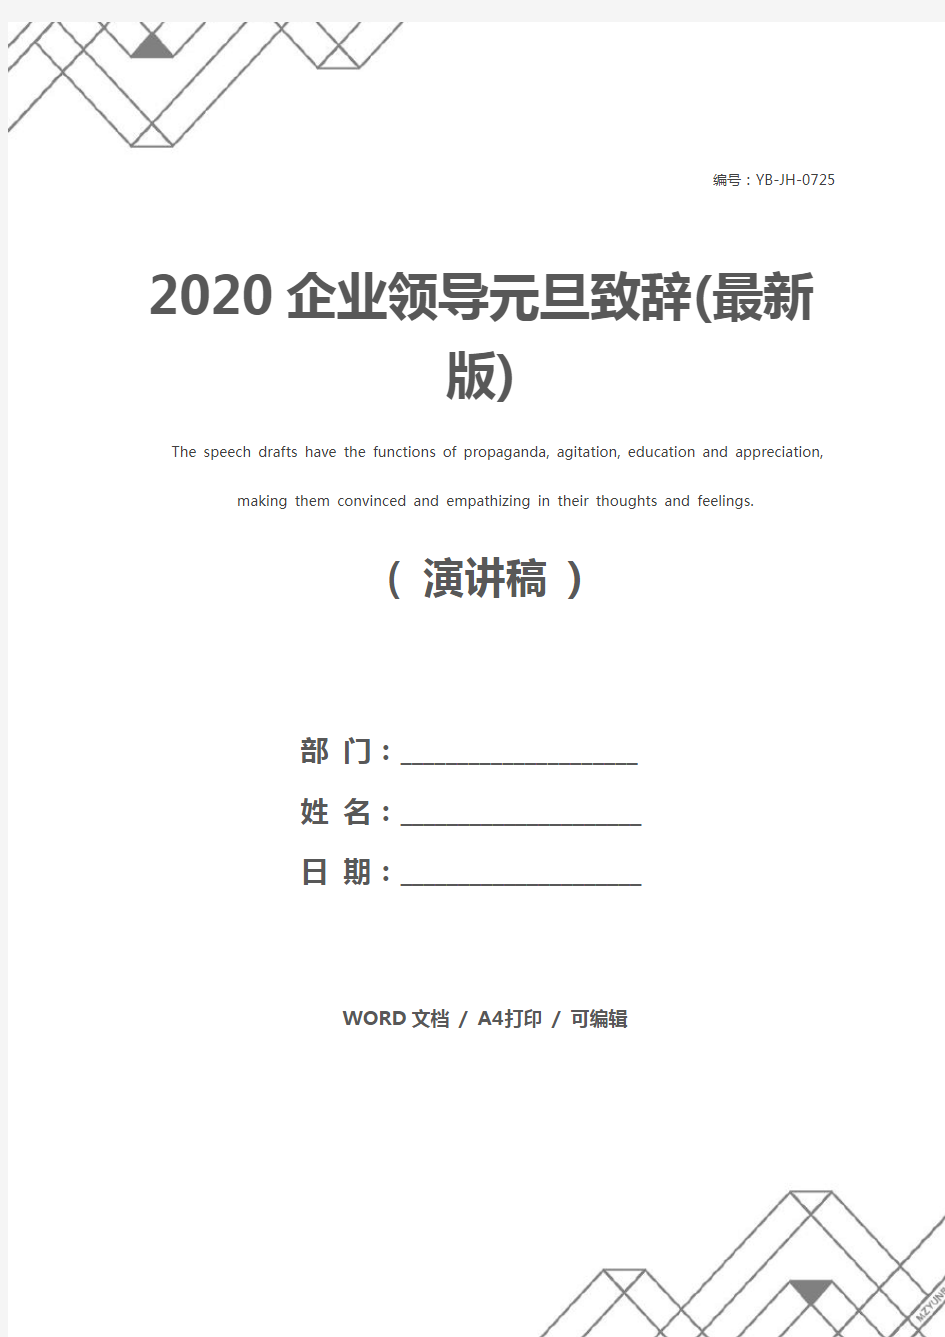 2020企业领导元旦致辞(最新版)